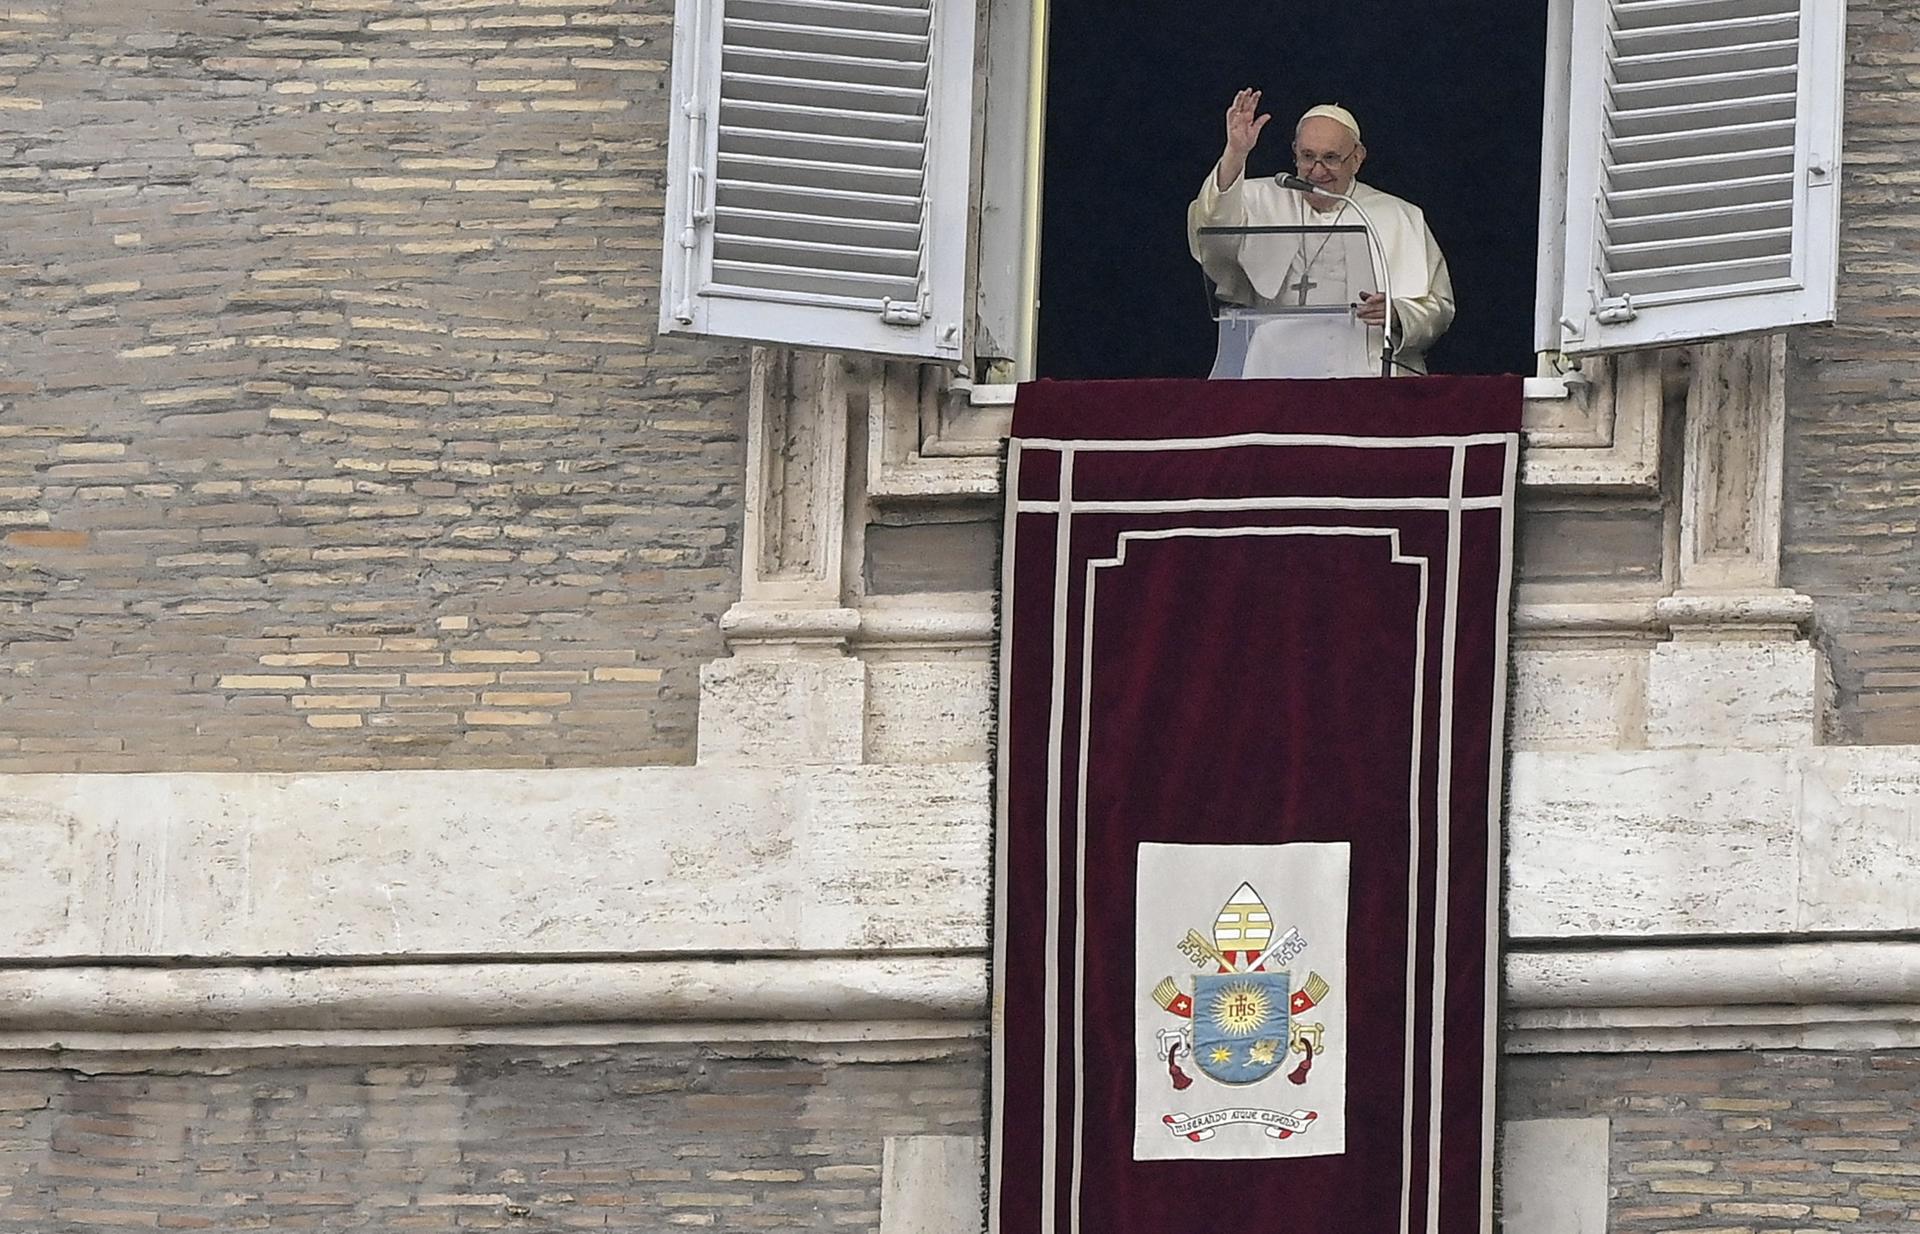 El papa confesó su dolor por la condena a obispo nicaragüense y pidió diálogo